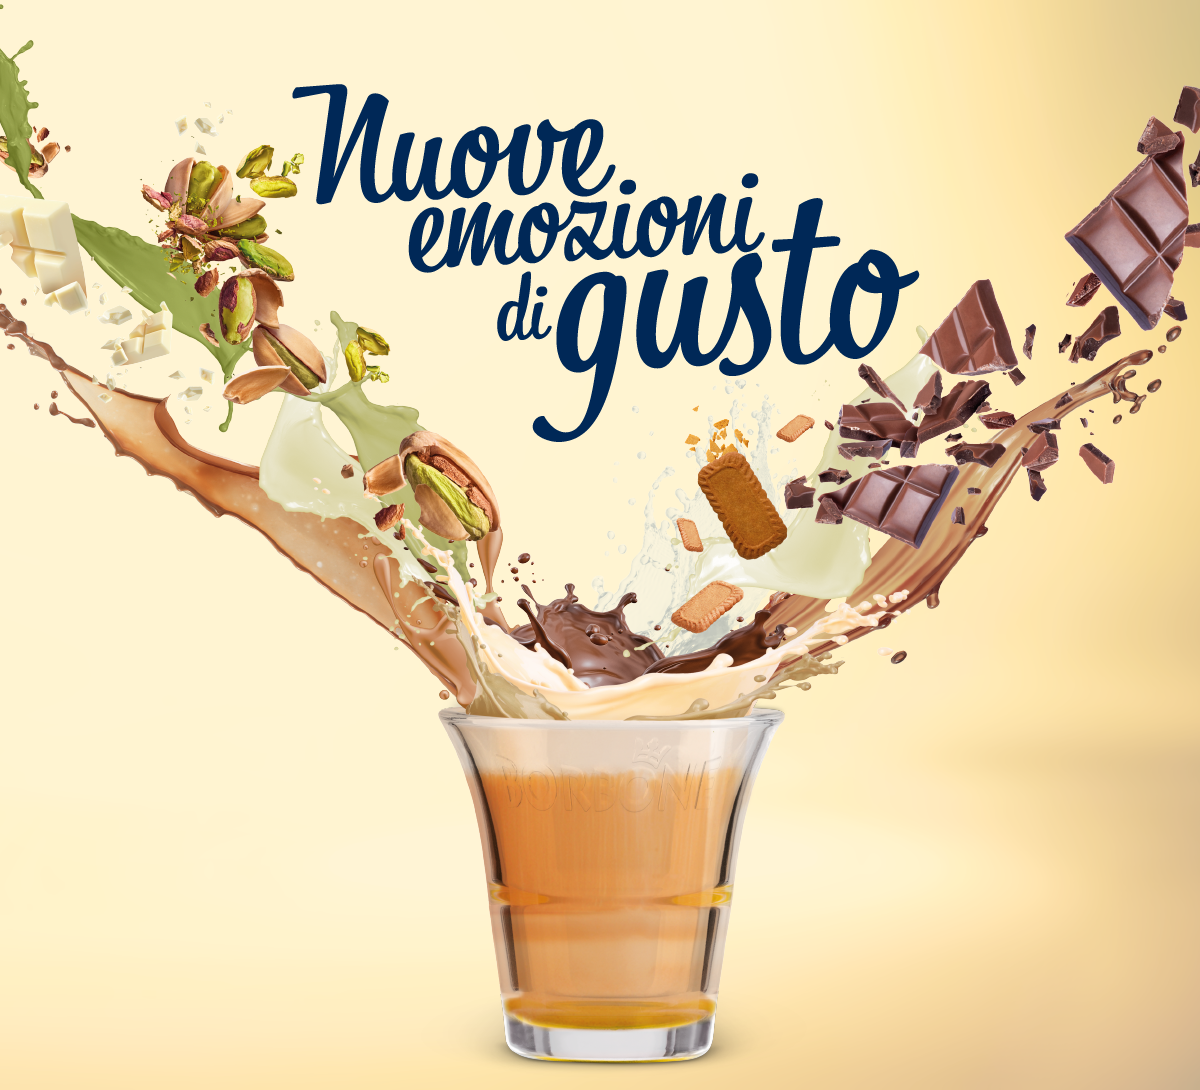 Caffè Borbone >> För er som älskar napolitanskt kaffe!